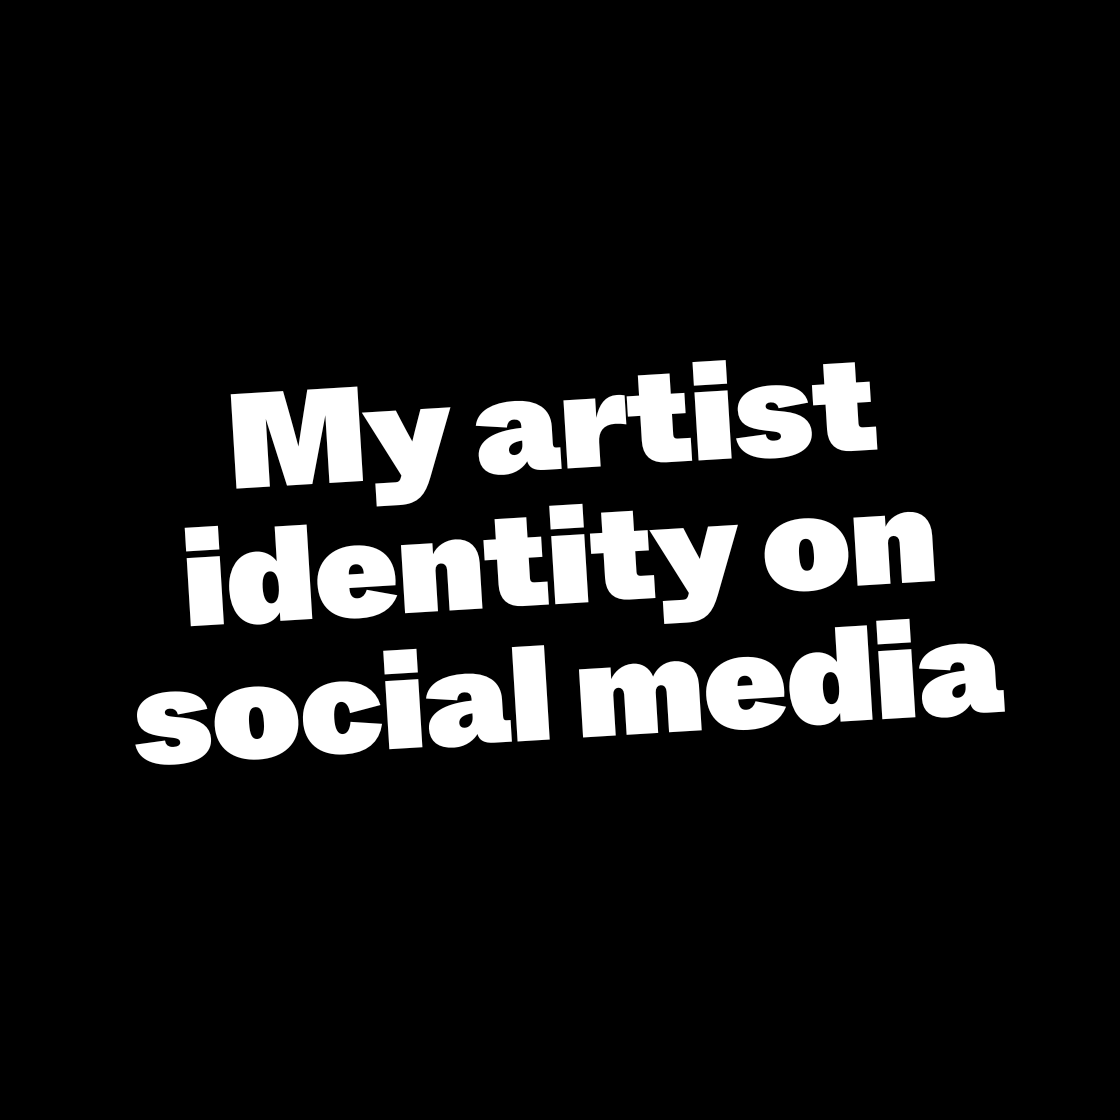 My artist identity on social media